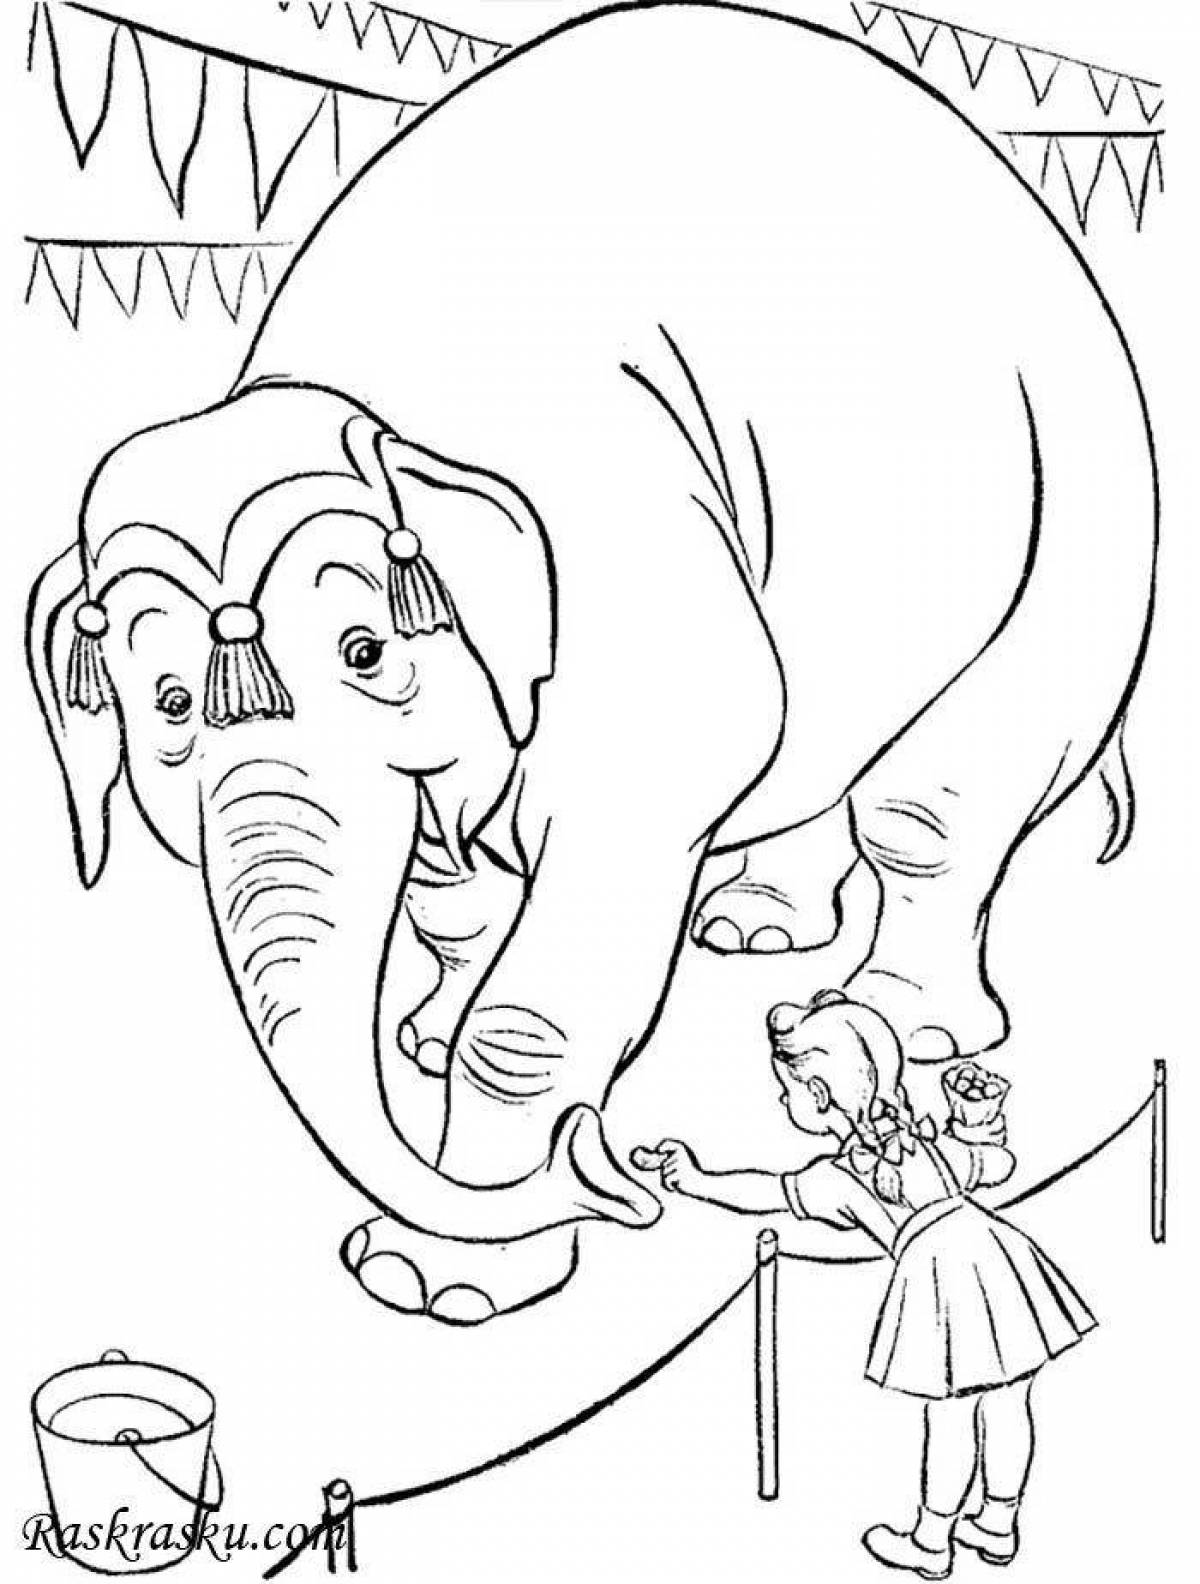 Stately coloring elephant kuprin